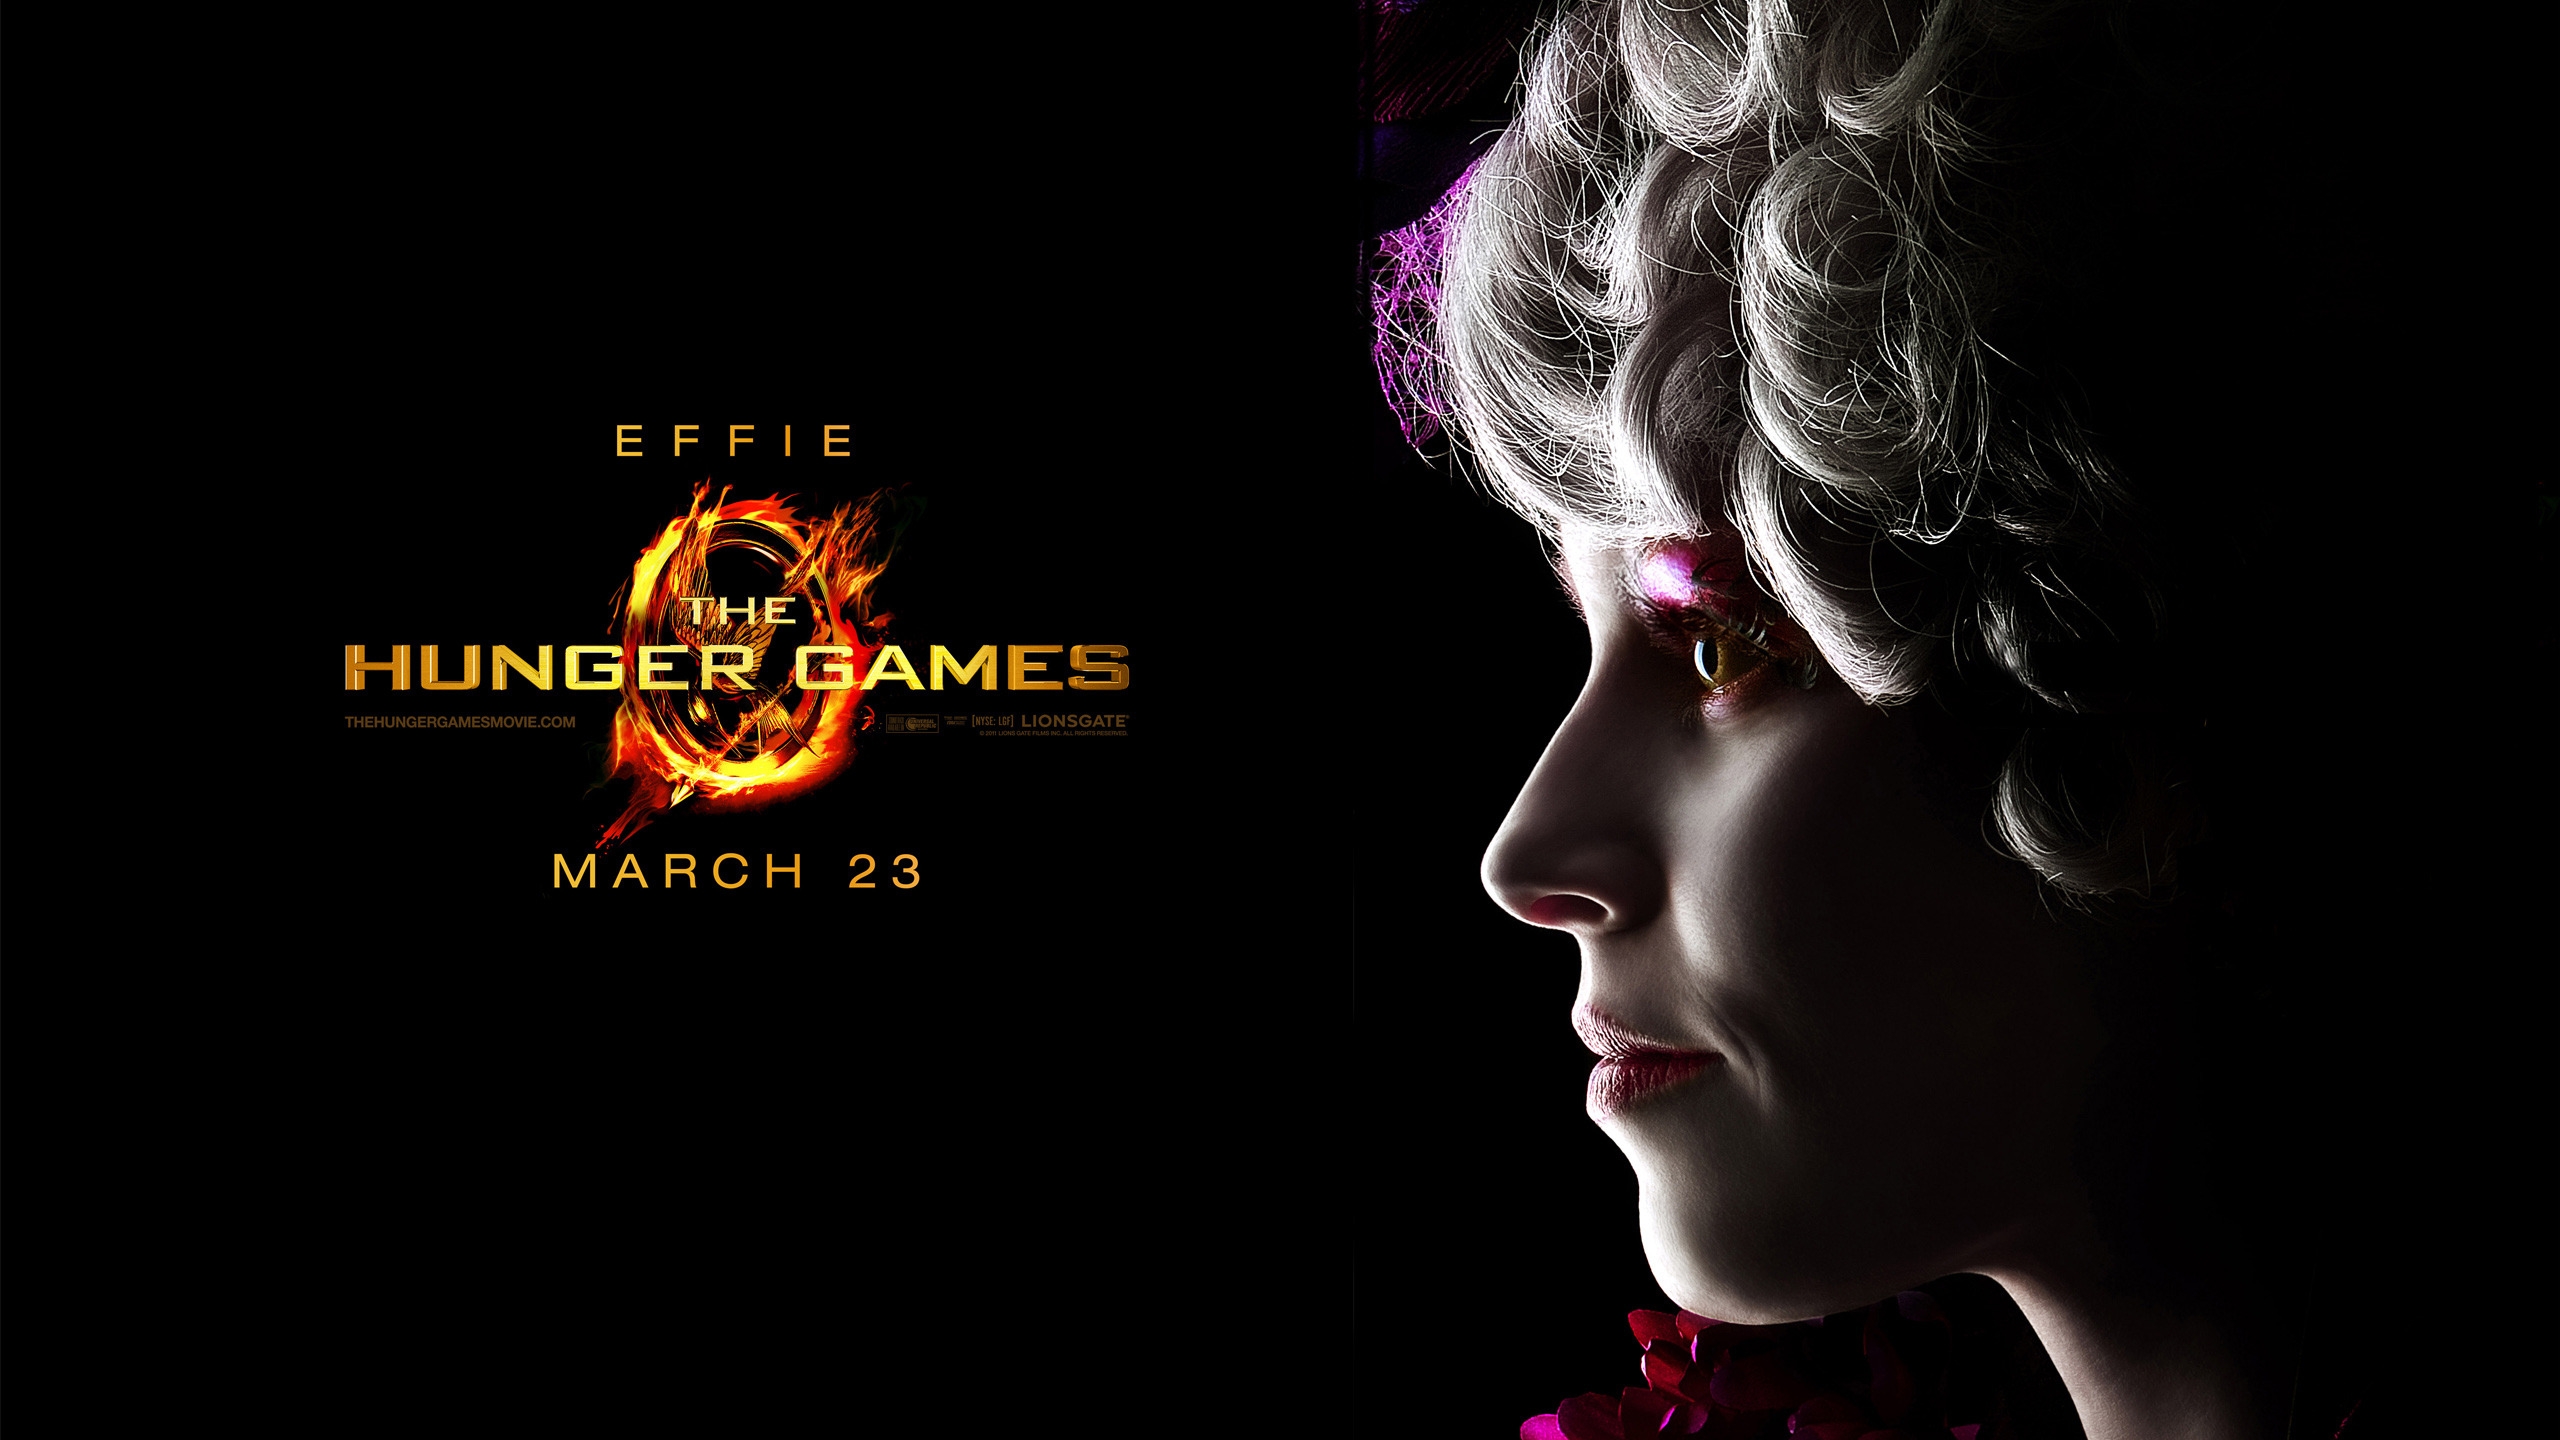 The Hunger Games Effie for 2560x1440 HDTV resolution